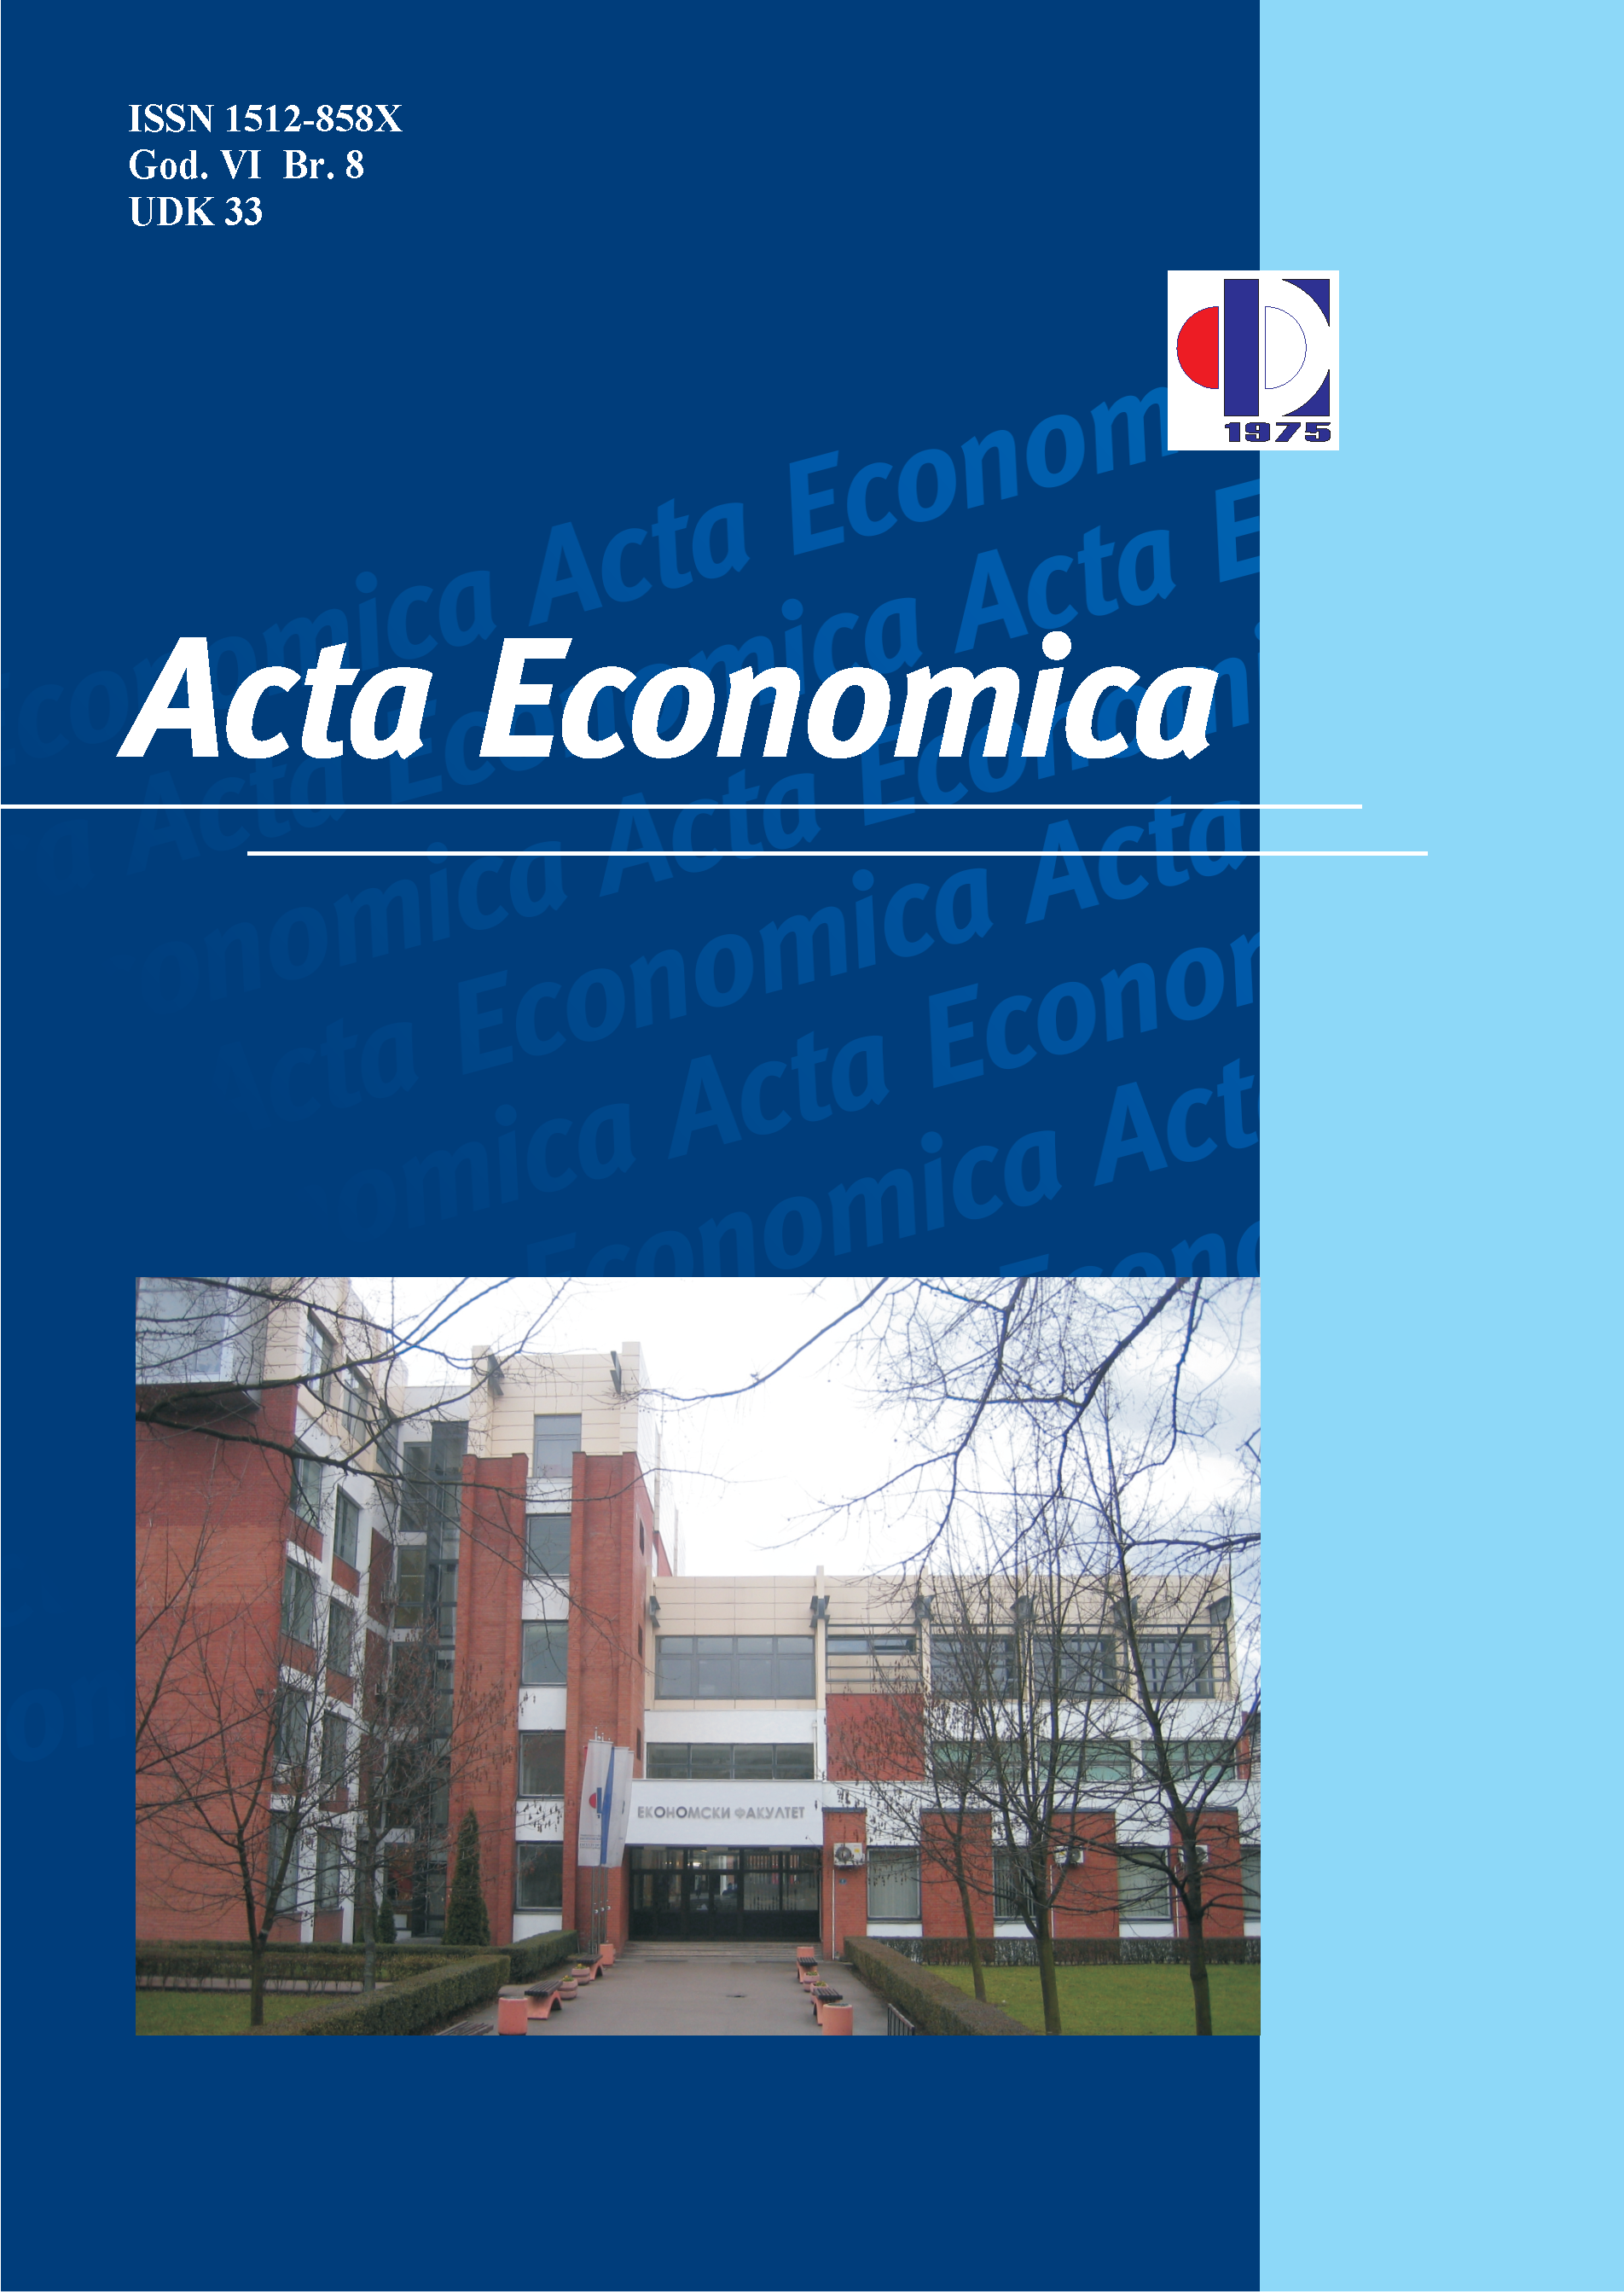 					View Vol. 8 No. 13 (2010): Acta Economica
				